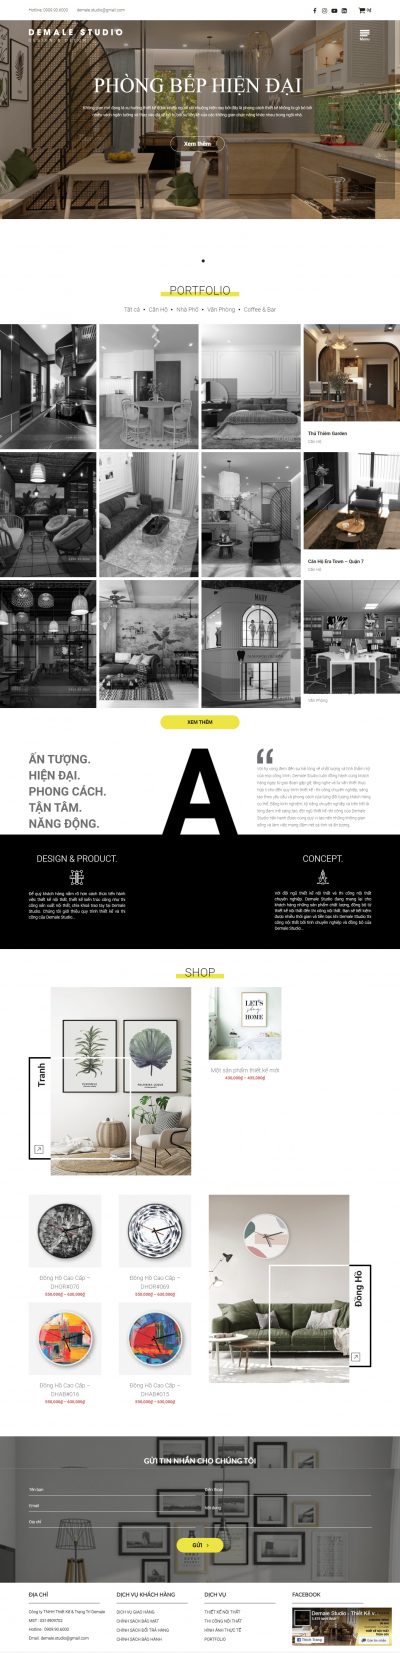 Demale Studio – Thiết kế, thi công nội thất